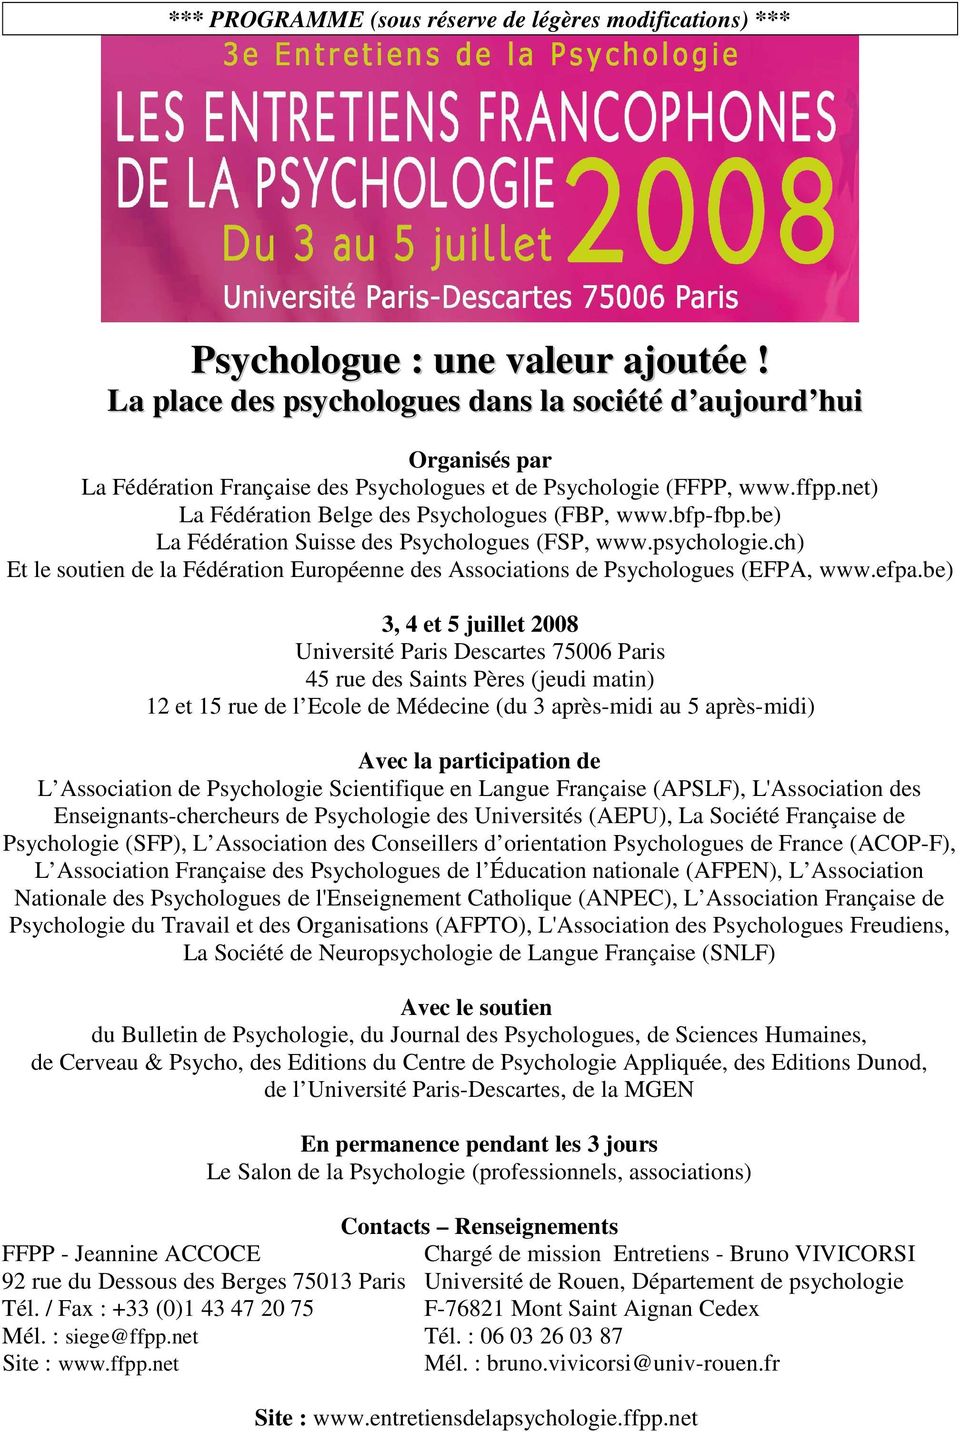 bfp-fbp.be) La Fédération Suisse des Psychologues (FSP, www.psychologie.ch) Et le soutien de la Fédération Européenne des Associations de Psychologues (EFPA, www.efpa.